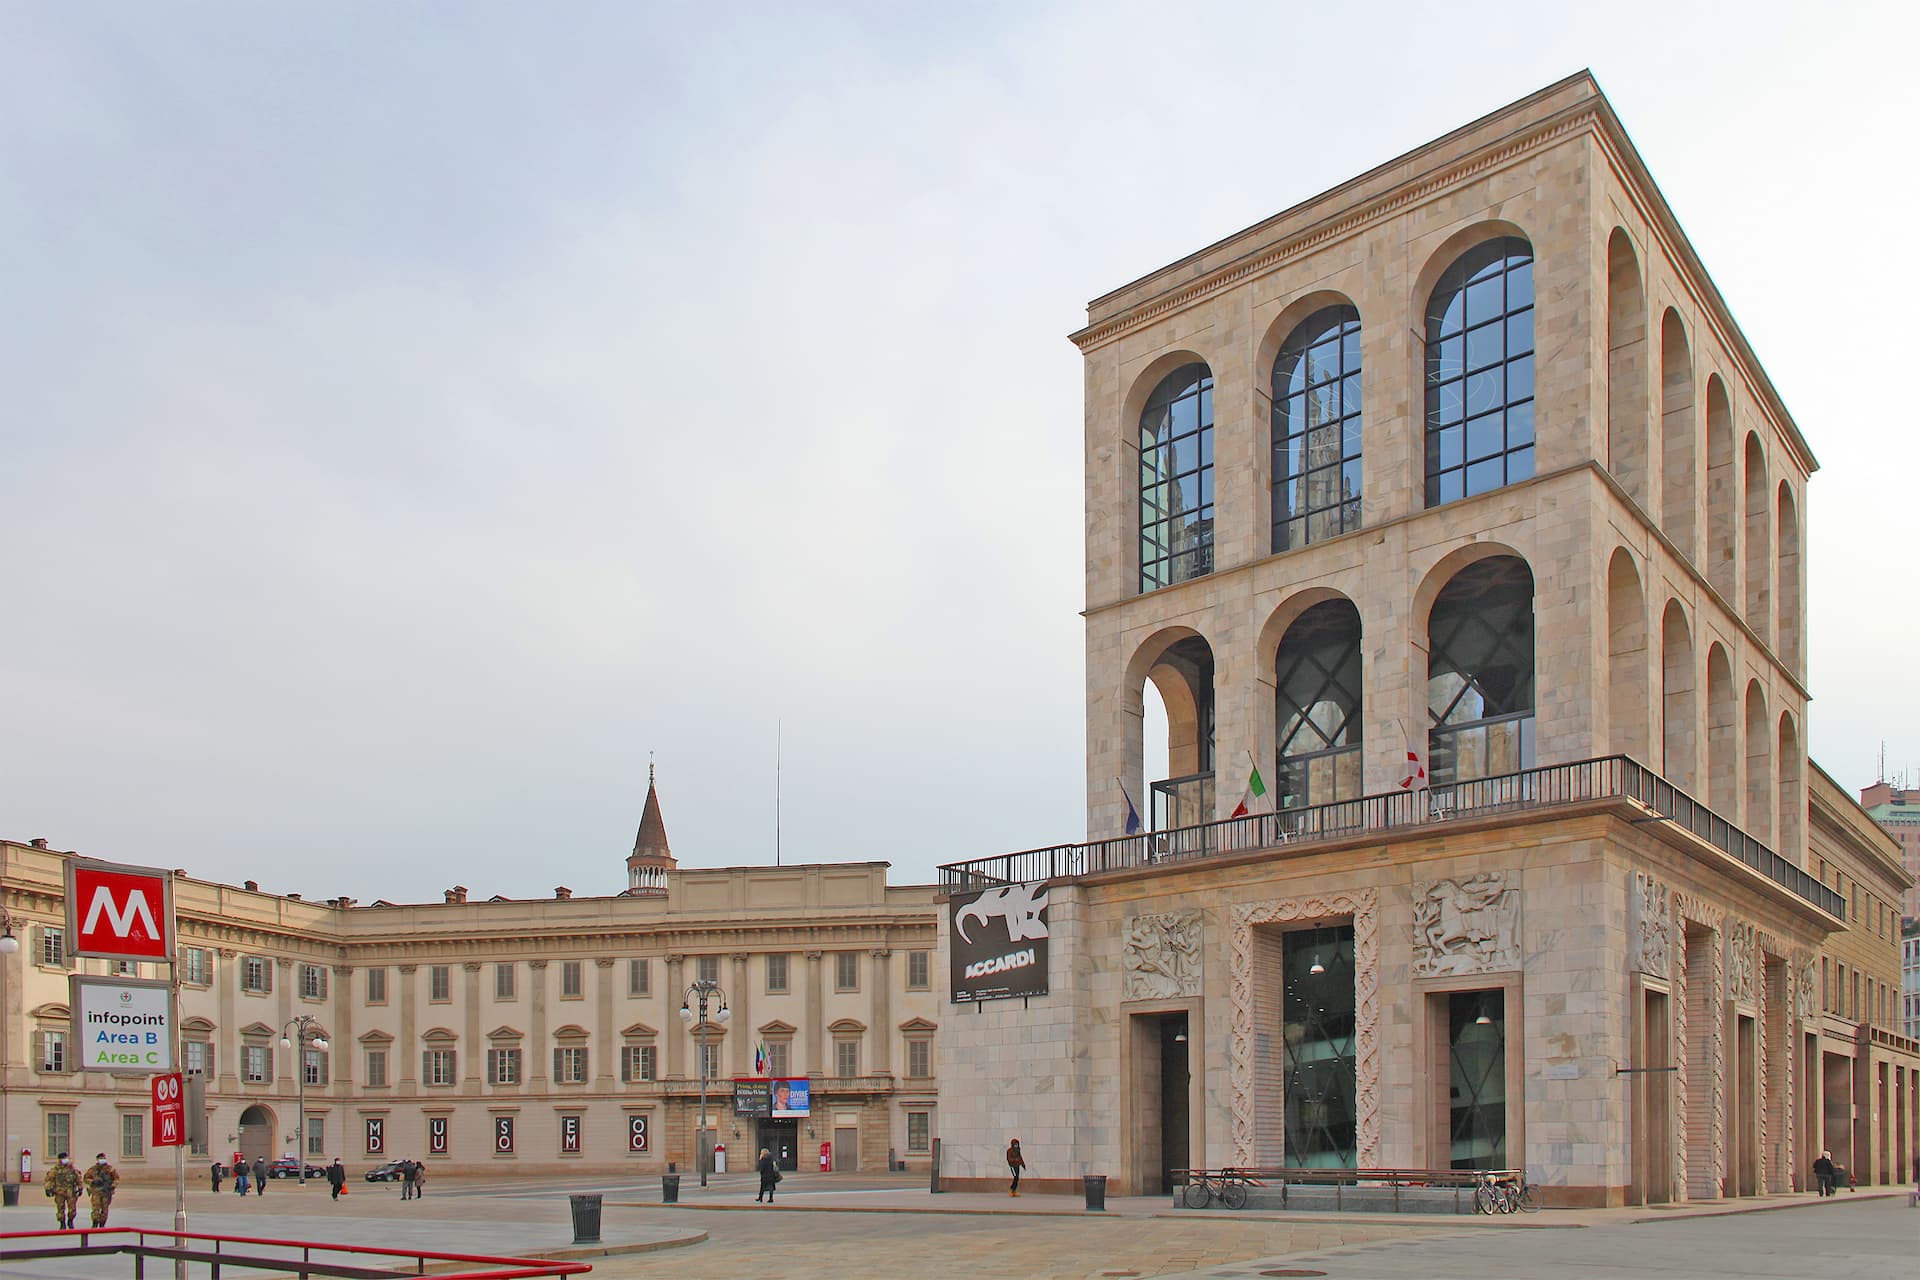 Museo del Novecento